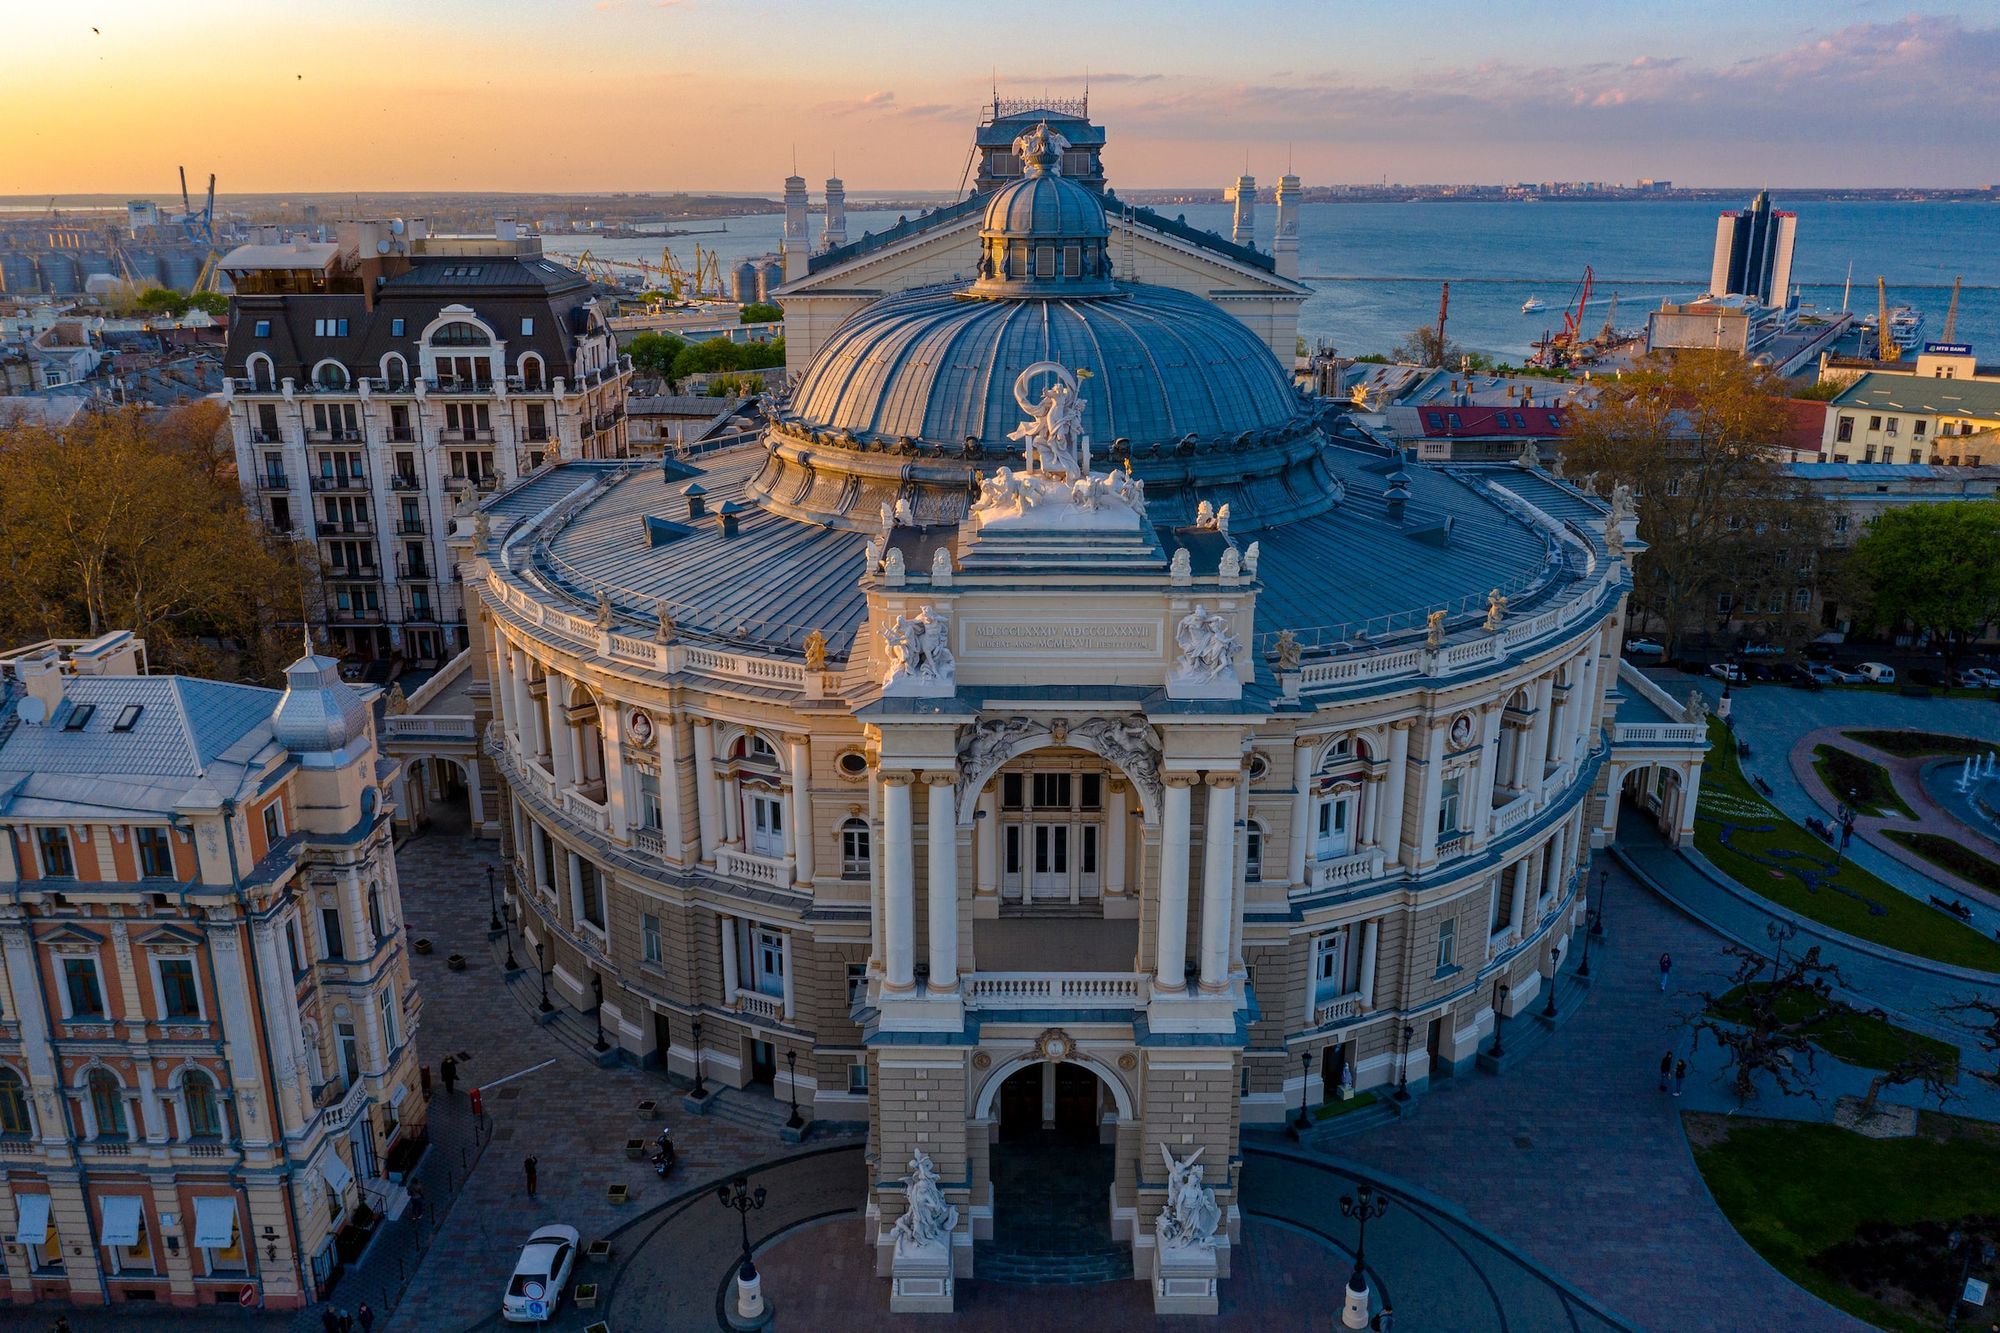 Odesa inscribed on UNESCO’s List of World Heritage in Danger